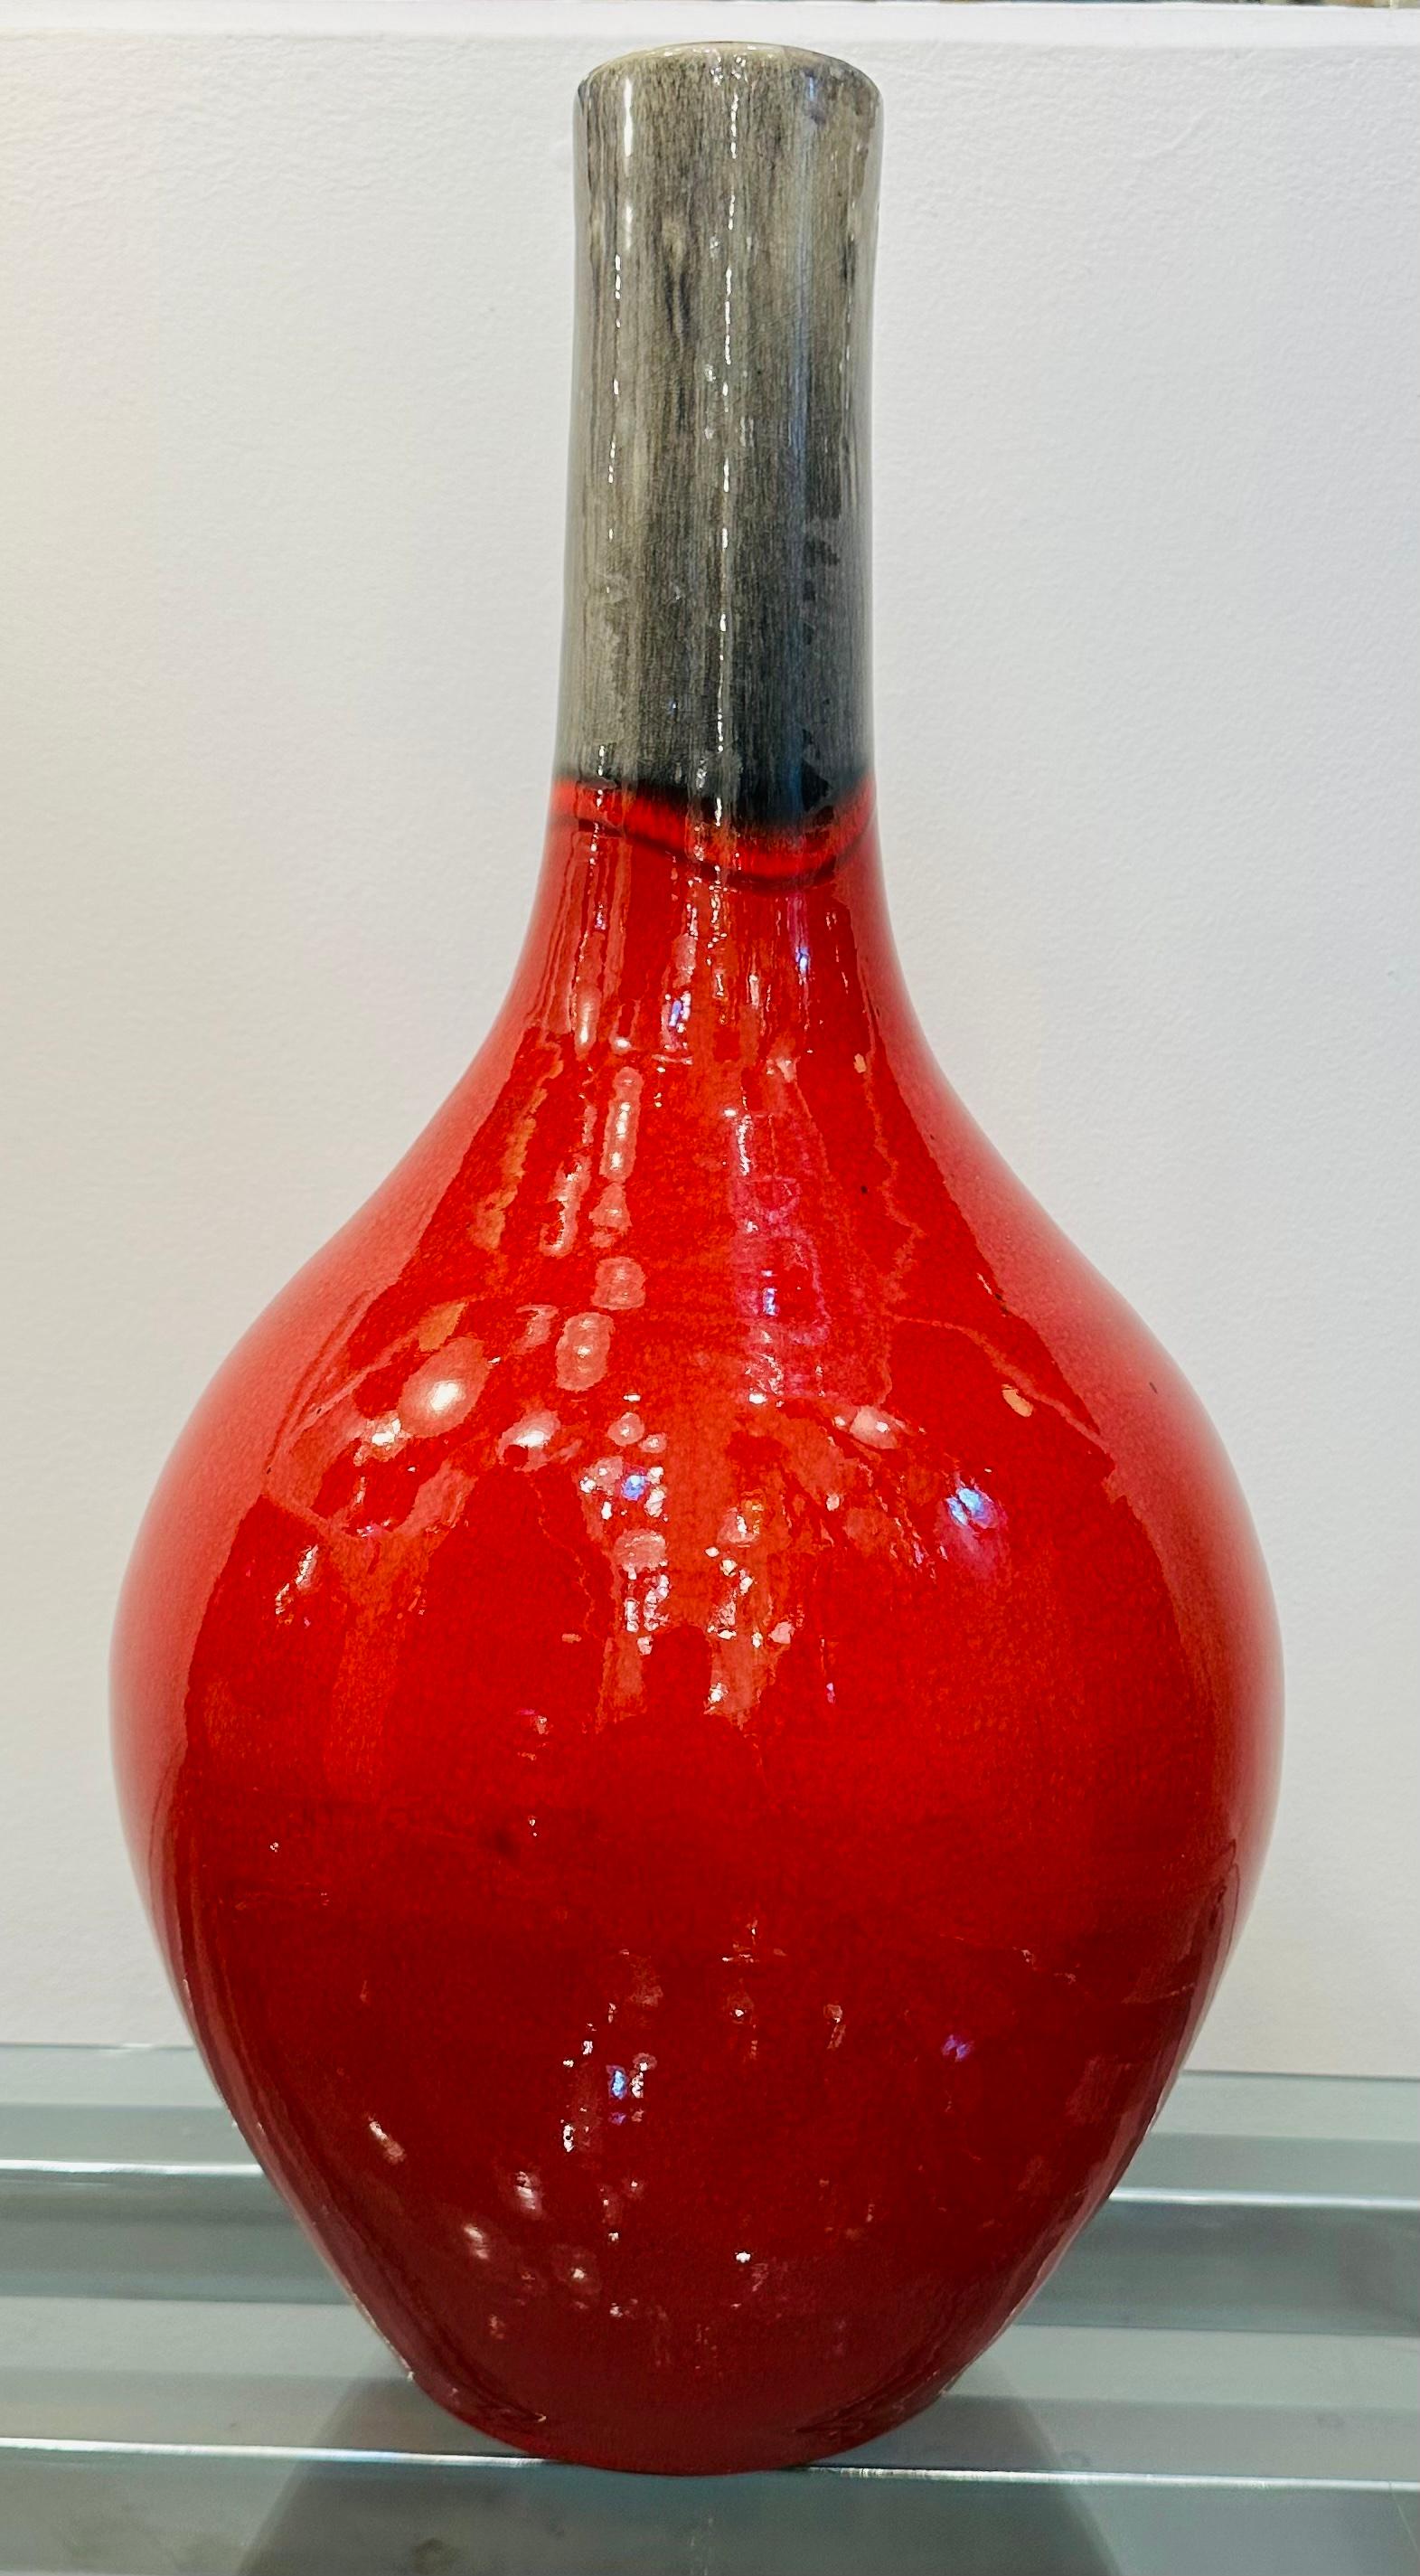  Grand vase en céramique émaillée rouge et grise tachetée des années 1970.  Le corps bulbeux d'un rouge marbré intense avec une merveilleuse glaçure chatoyante se rétrécit vers le col où la couleur se transforme en un gris fondu aux nuances variées.